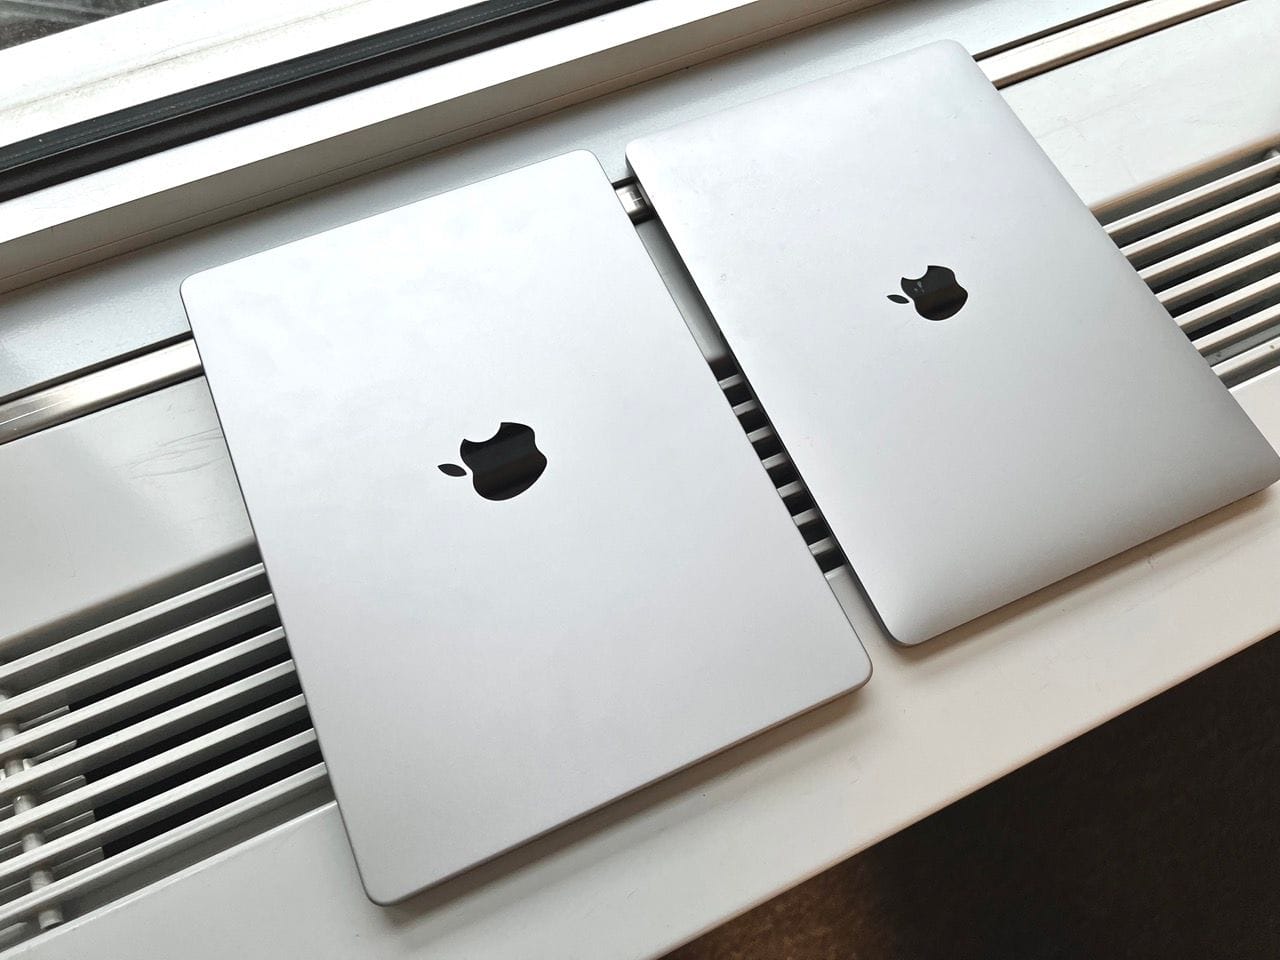 Neues 14" MacBook Pro (links) neben dem seit einigen Jahren genutzten Gehäuse des 13" MacBook Pro.